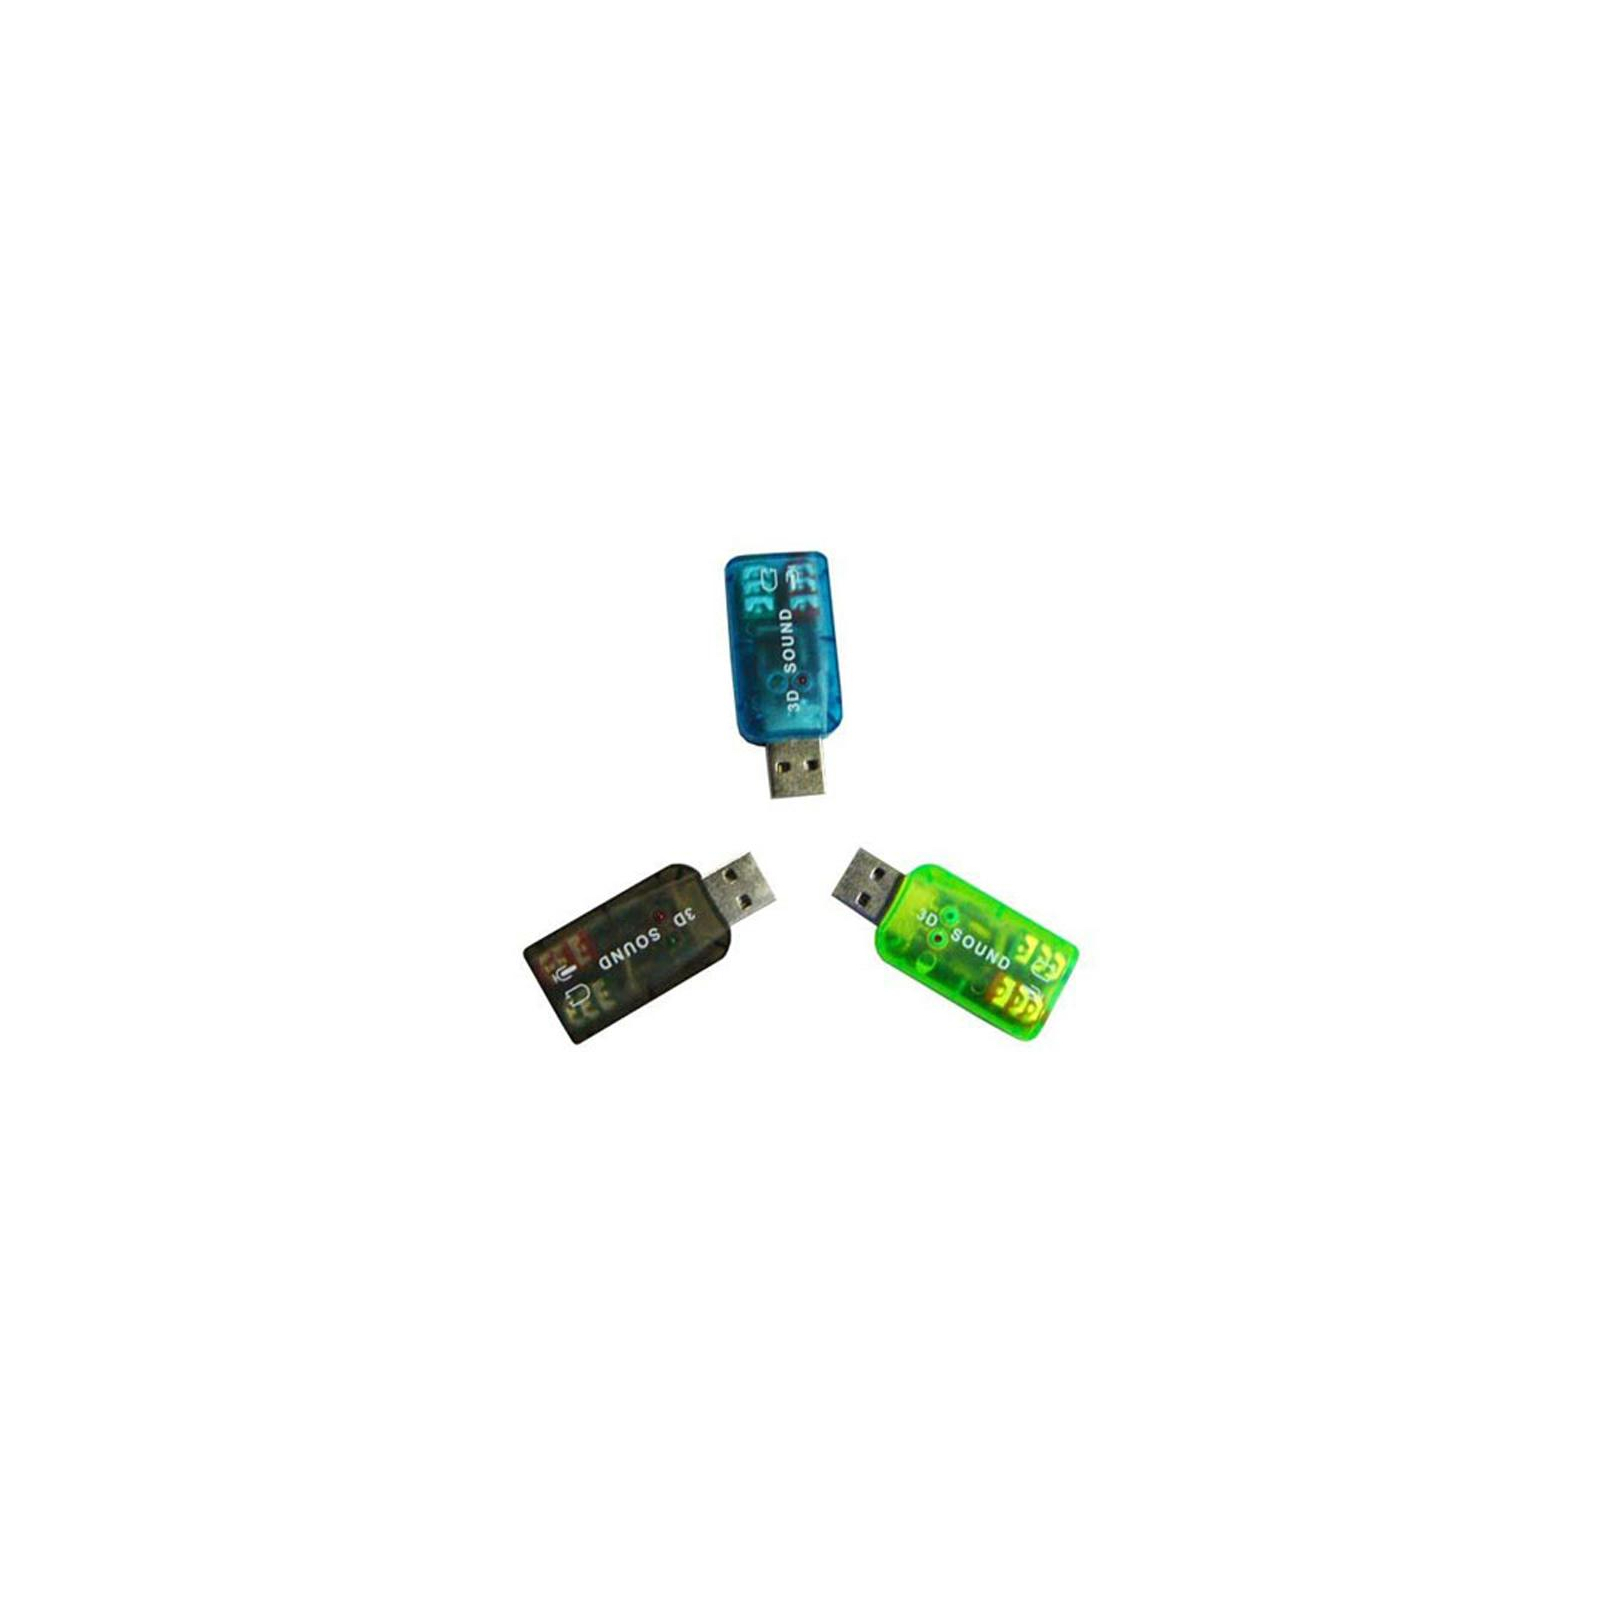 Звуковая плата Atcom USB-sound card (5.1) 3D sound (Windows 7 ready) (7807) изображение 2